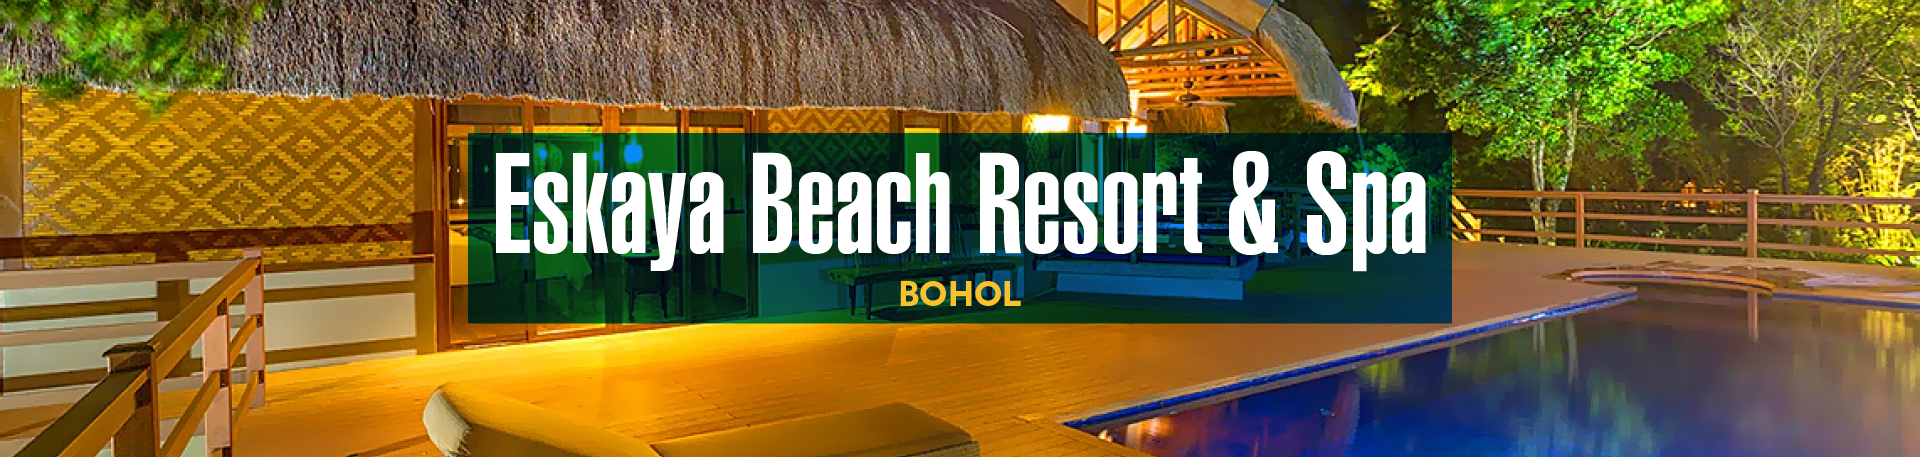 Eskaya Beach Resort & Spa. Bohol